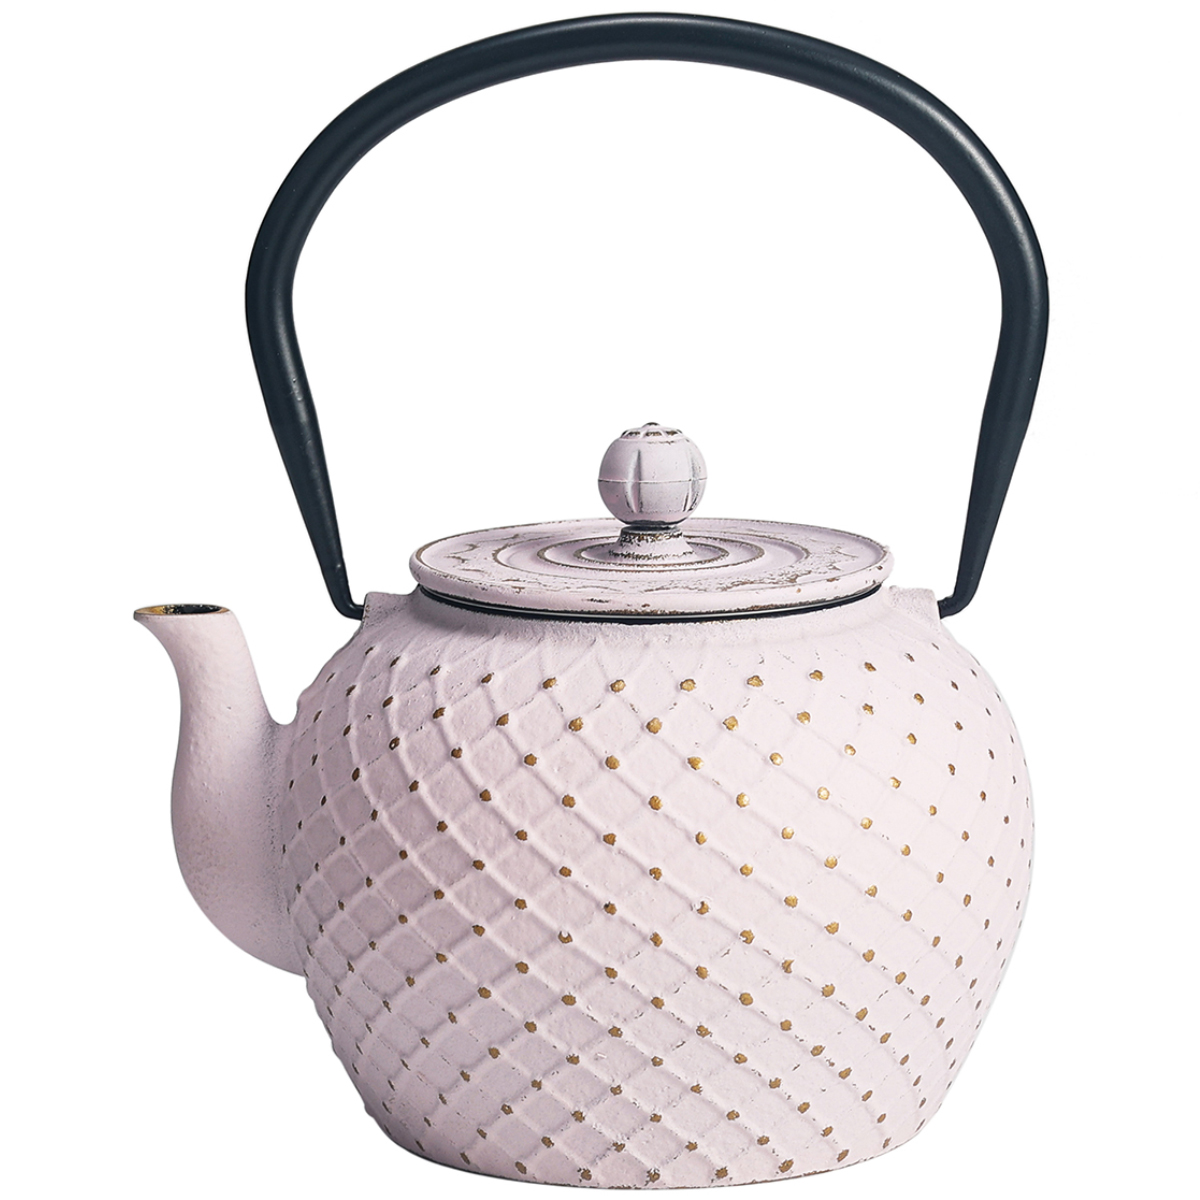 Japanese style cast iron teapot 1 liter